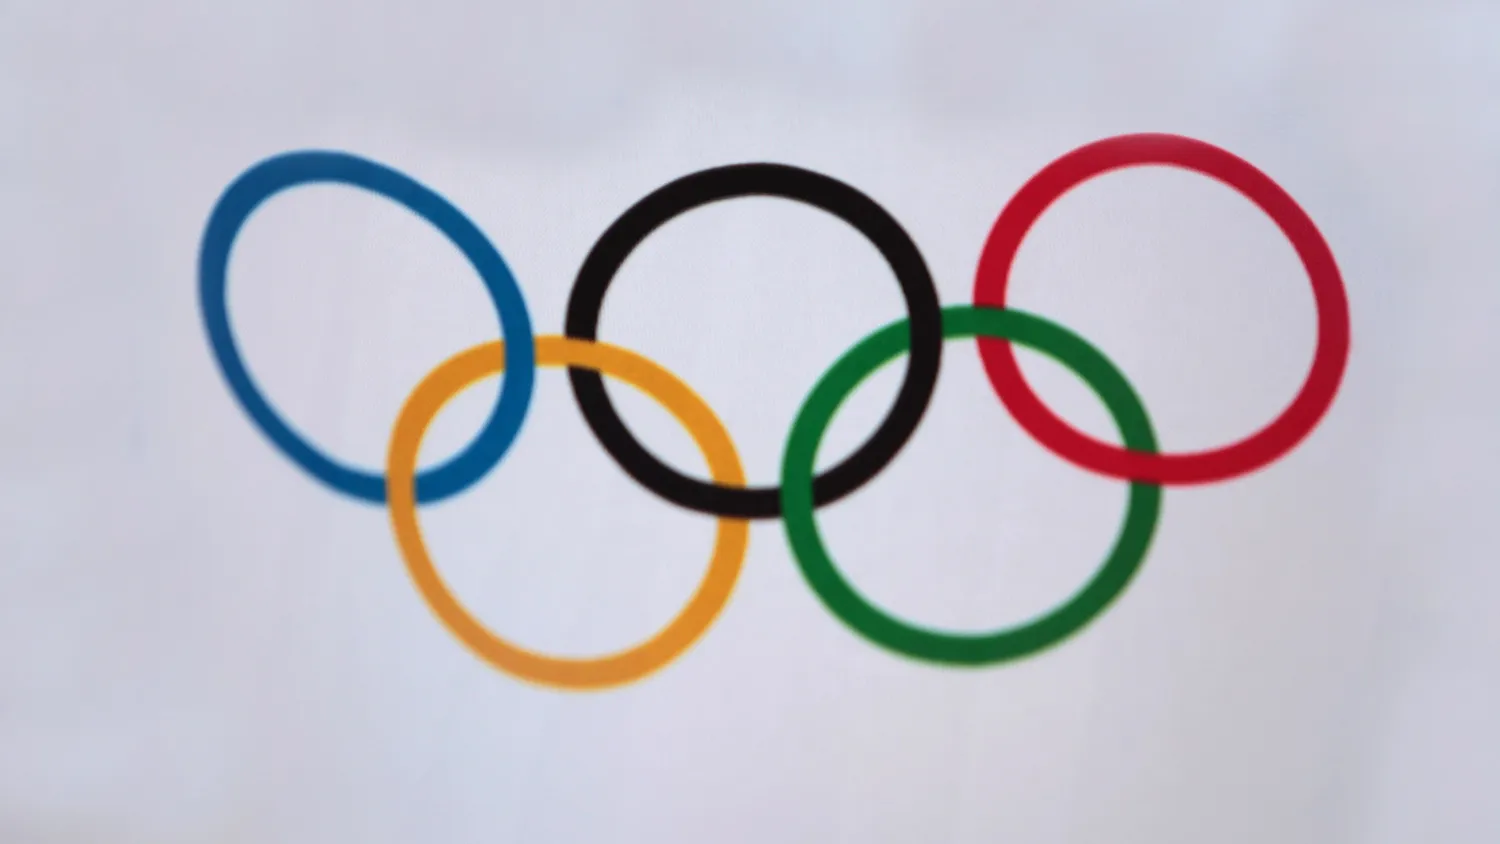 Сборная России обеспечила себе досрочную победу в медальном зачете на Паралимпиаде